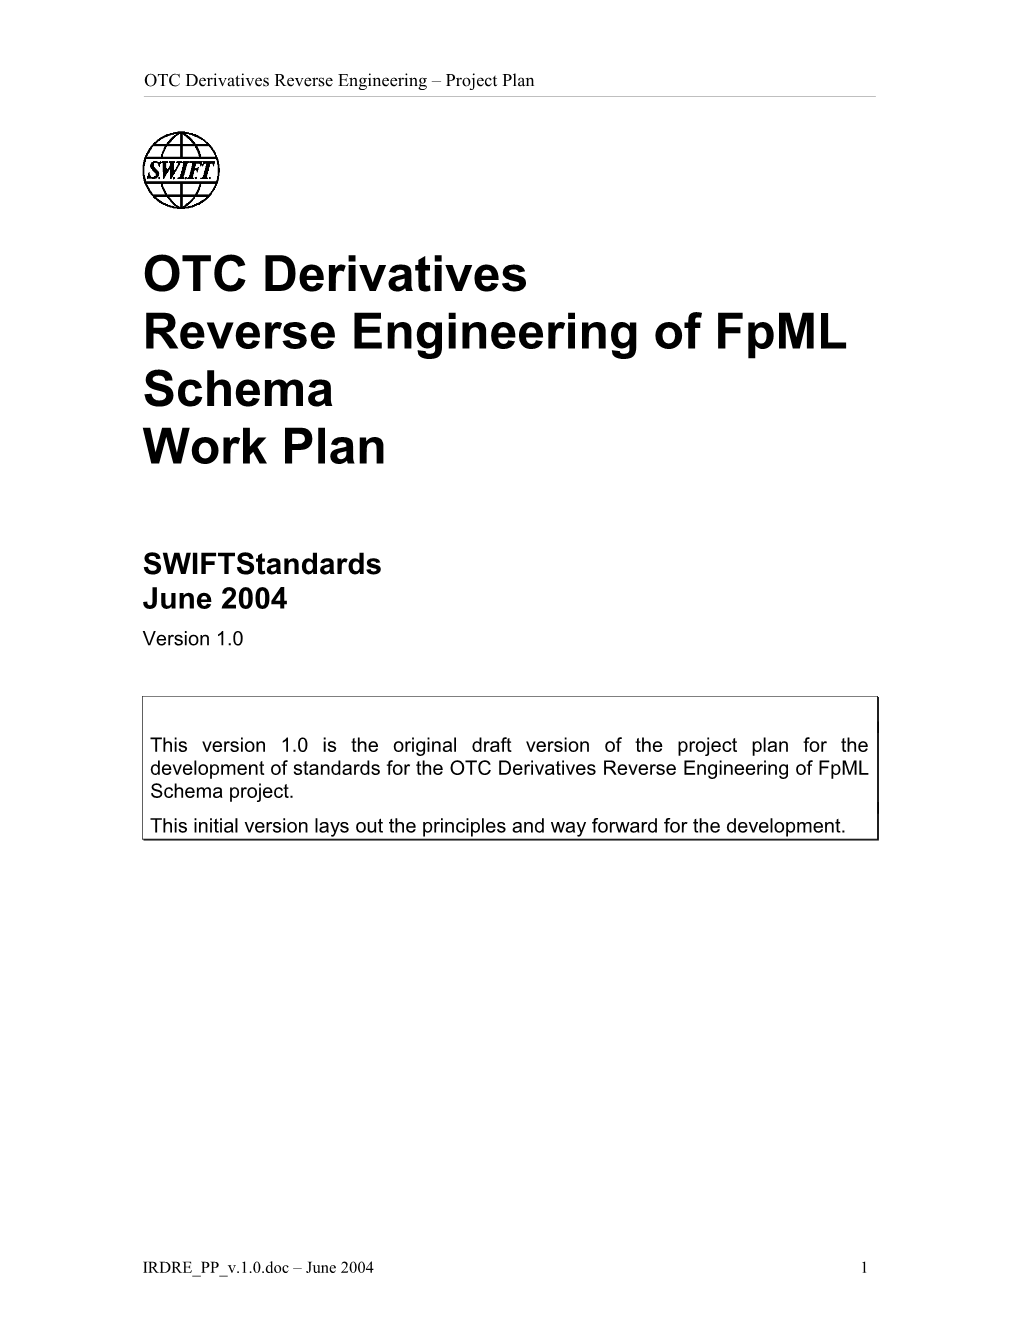 OTC Derivatives Reverse Engineering Offpml Schema Work Plan